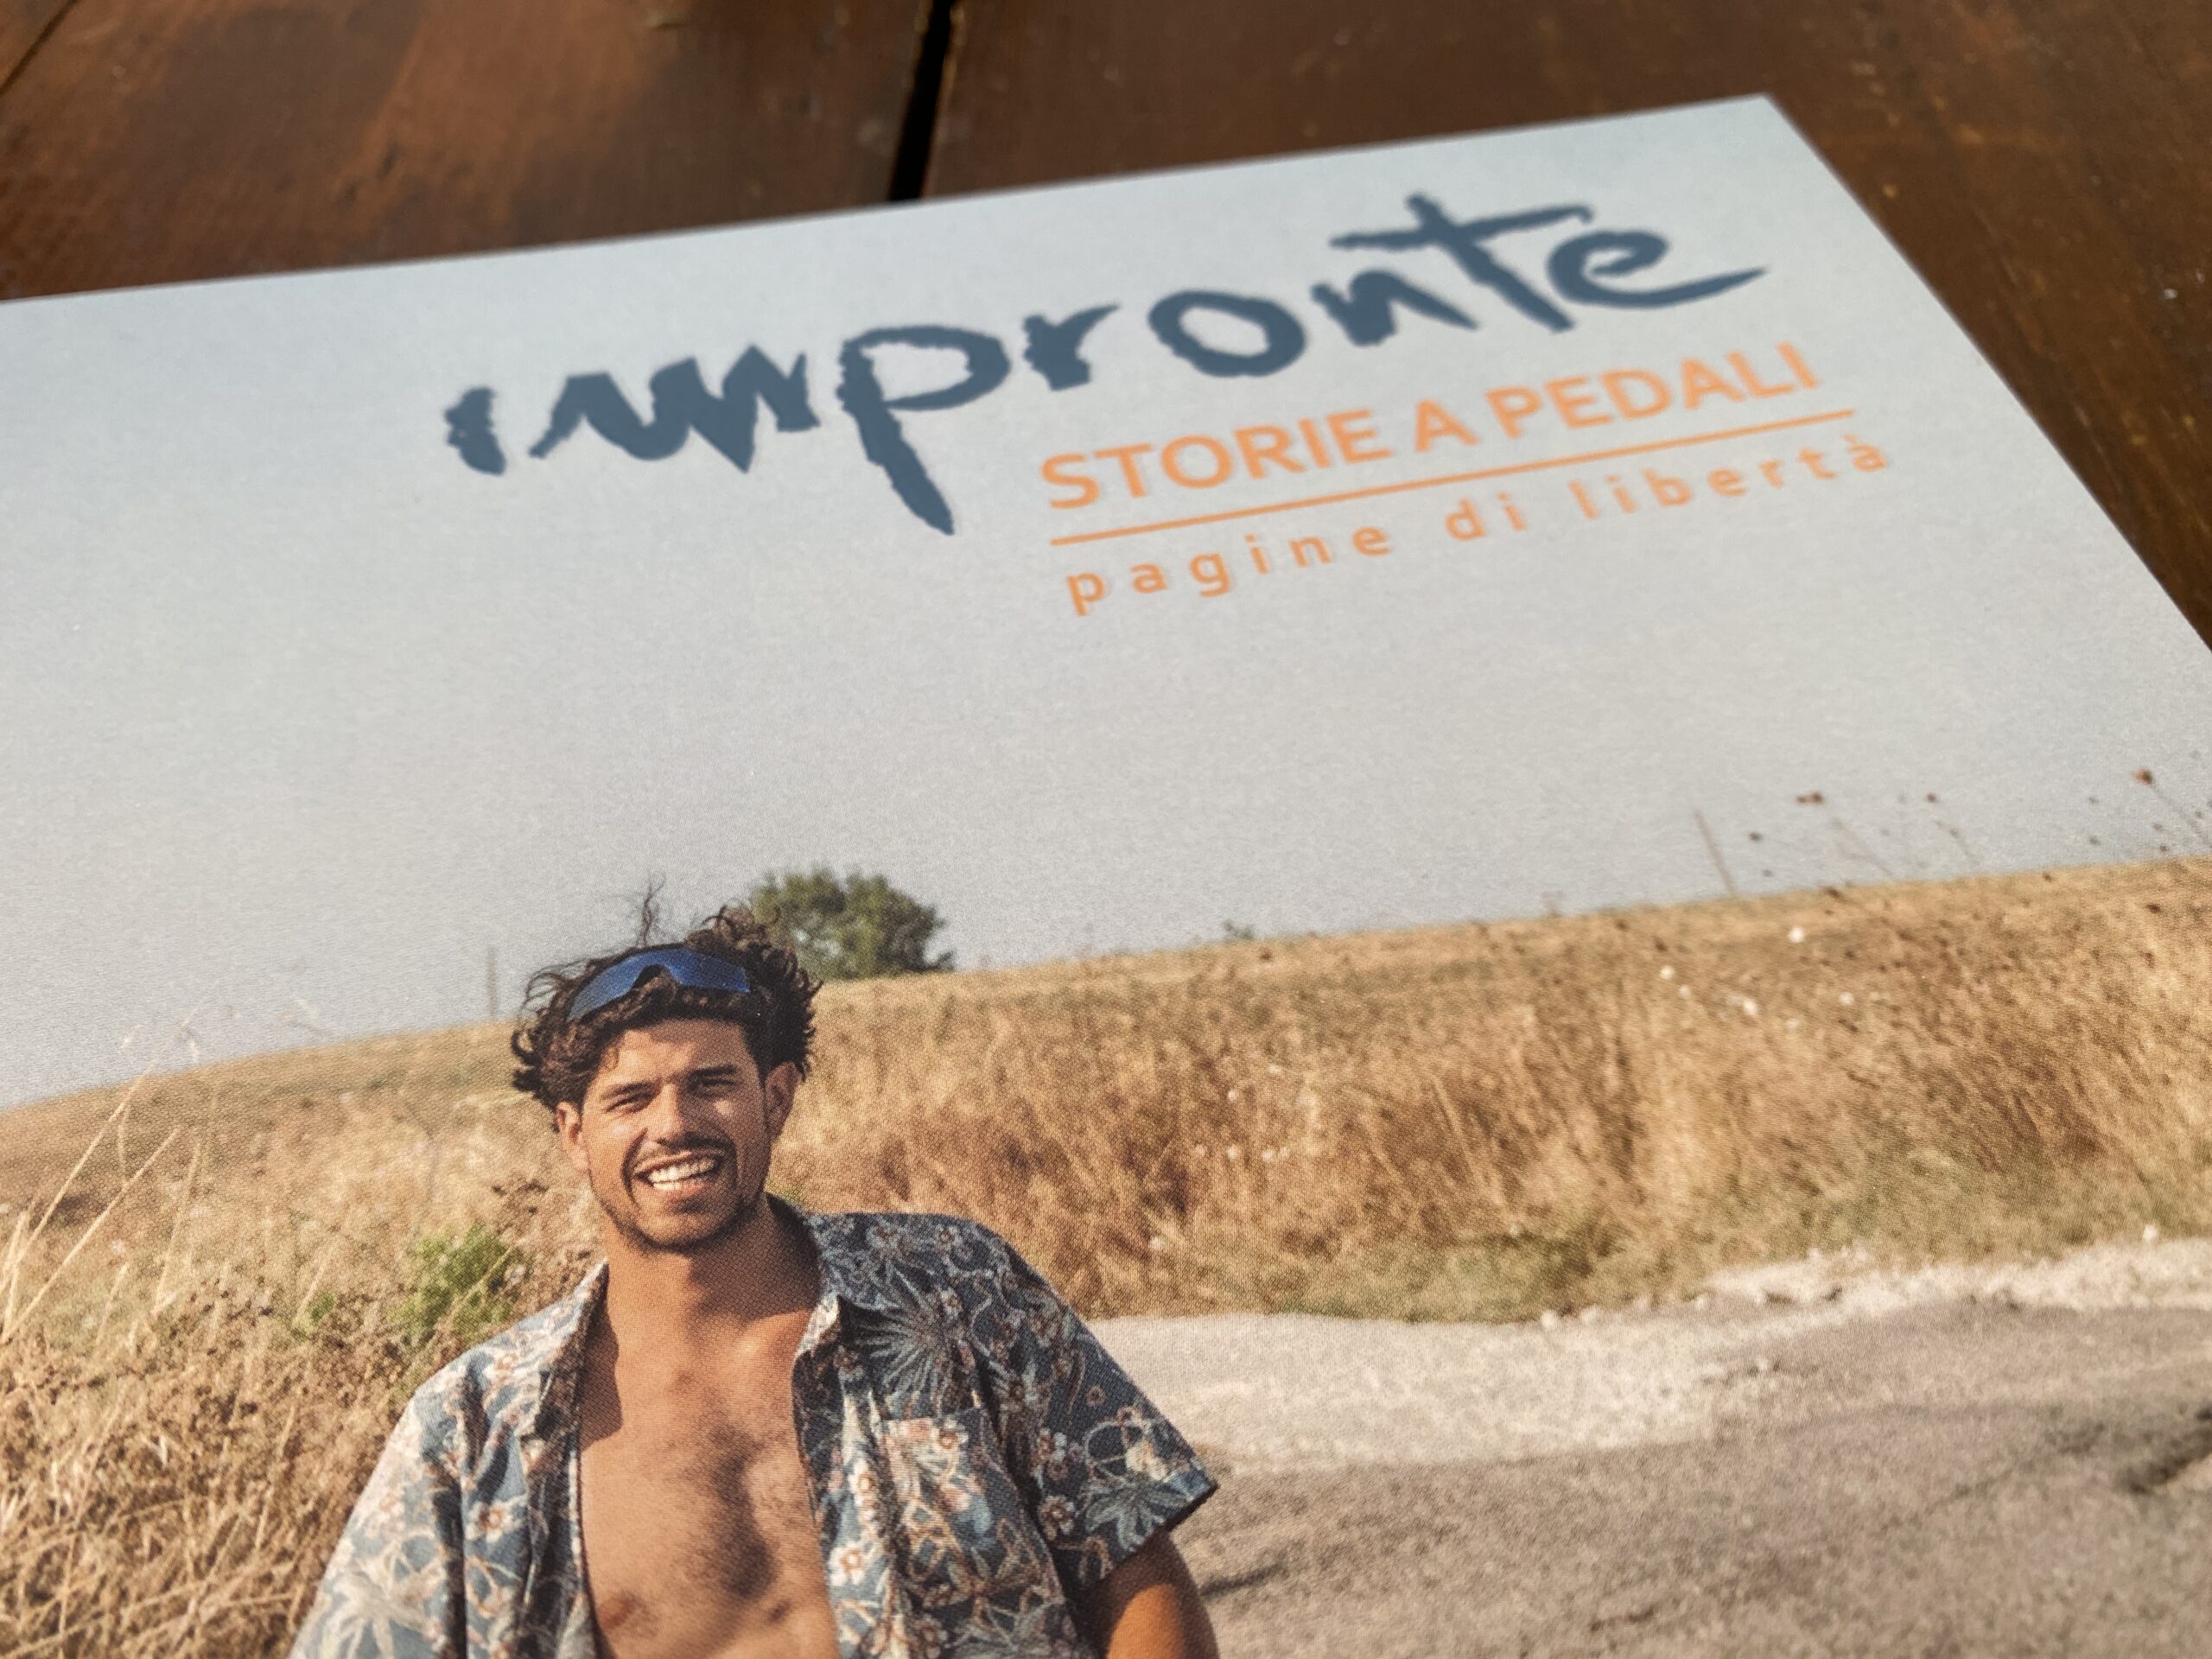 Impronte - Storie a pedali 0 | Interno, Renato Frignani